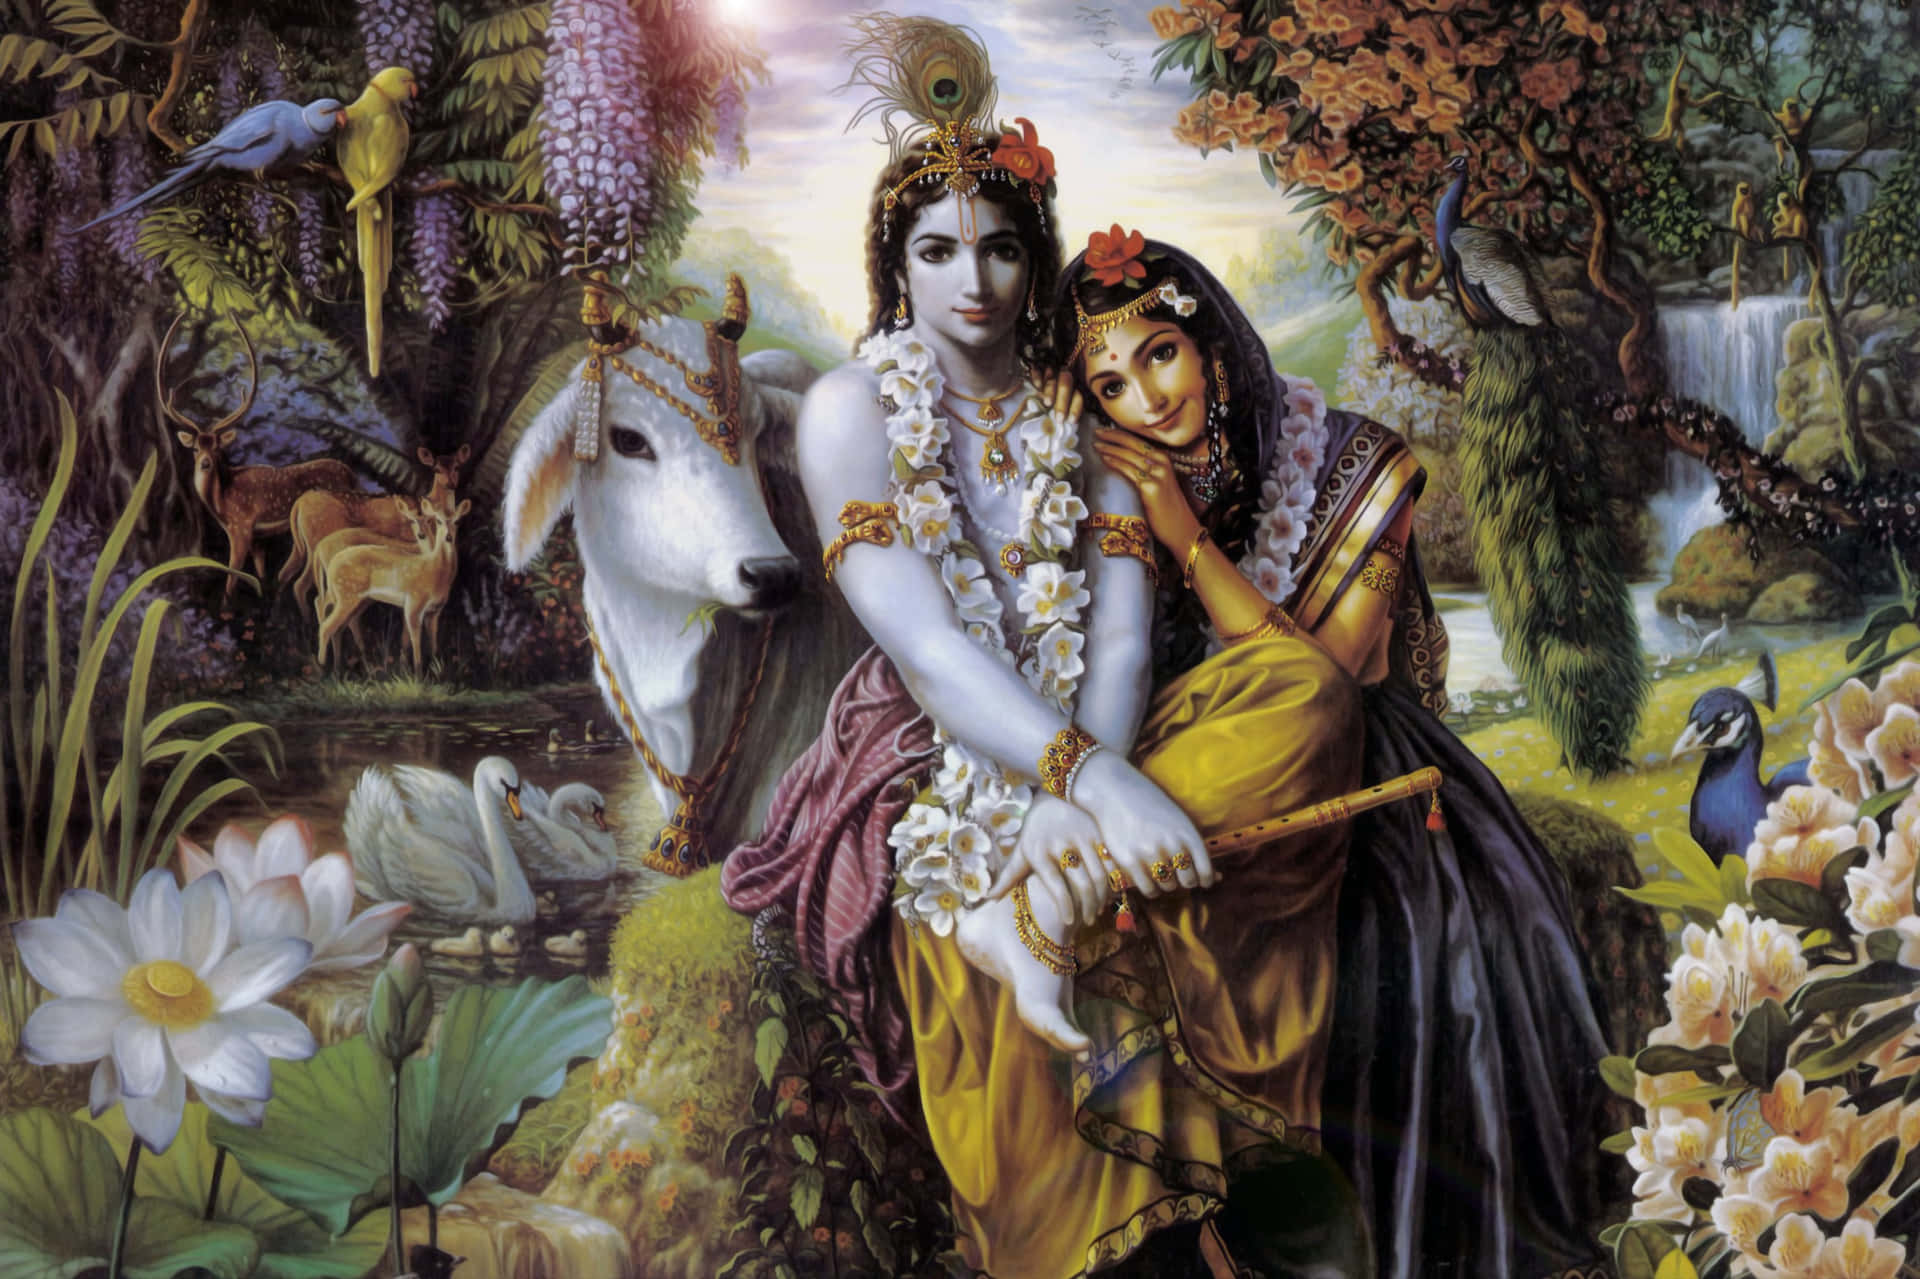 Radha and Krishna Exchanging Love